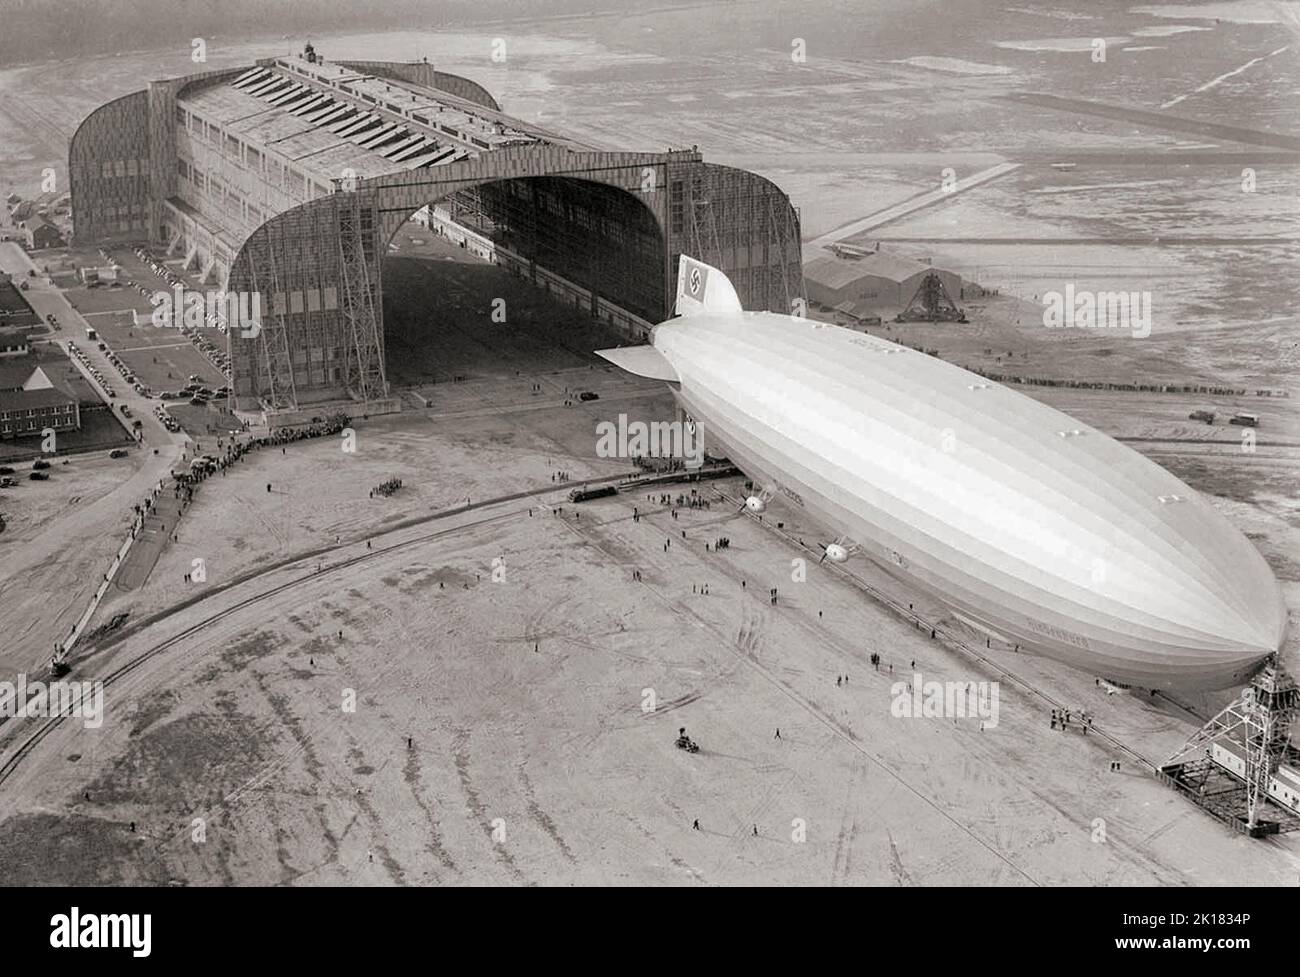 Un tedesco-costruito Zeppelin Hindenburg entrando nel hangar della Marina degli Stati Uniti, il suo naso agganciato alla torre di ormeggio mobile, a Lakehurst, New Jersey, il 9 maggio 1936. Il cabinato aveva appena stabilito un record per il suo primo attraversamento nord Atlantico, la prima tappa di dieci viaggi di andata e ritorno tra la Germania e l'America. Foto Stock